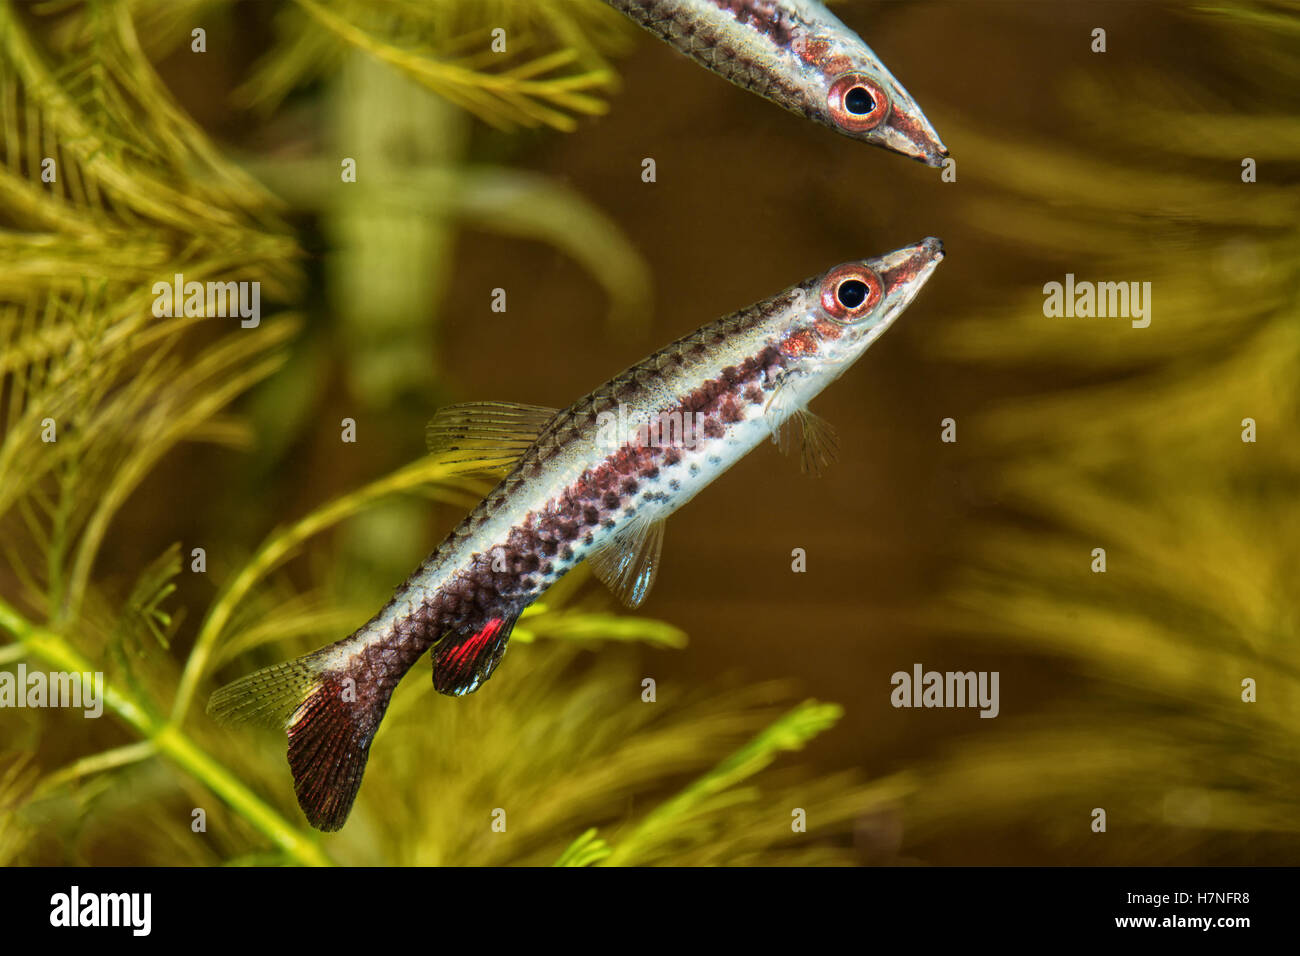 Portrait of freshwater pencil fish (Nannostomus eques) in aquarium Stock Photo